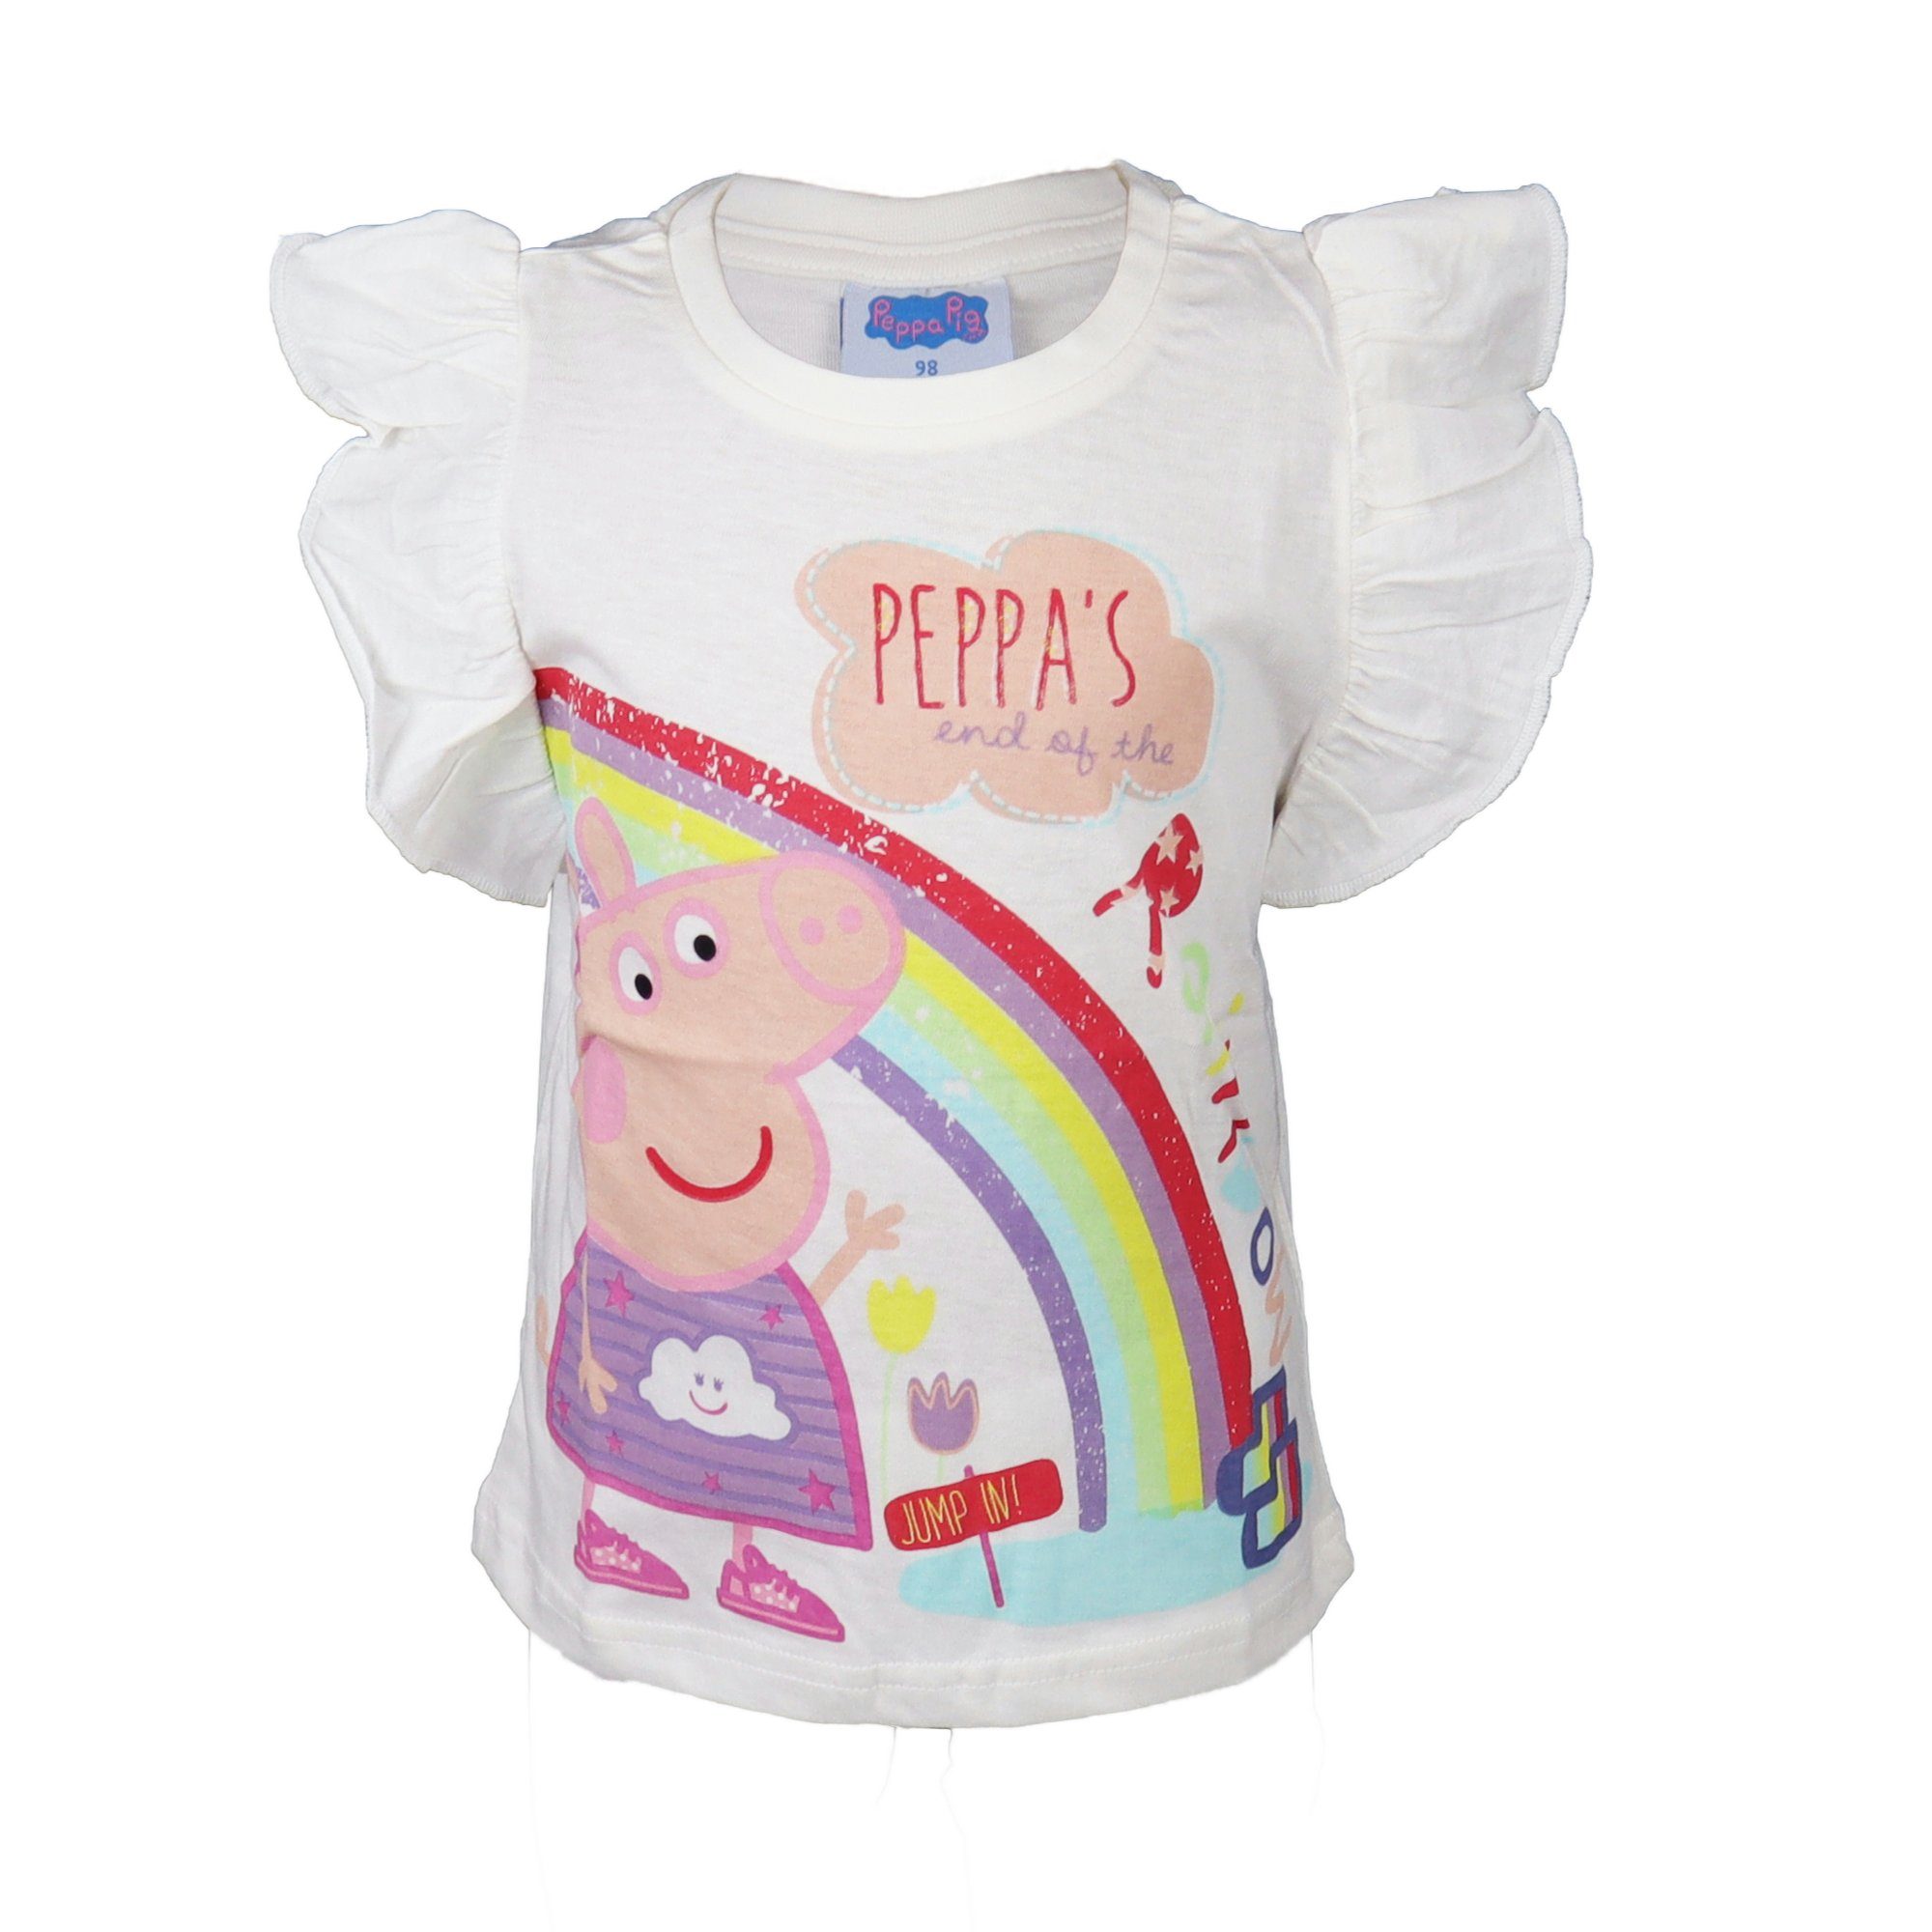 Peppa Pig T-Shirt Wutz Kinder Shirt Gr. 92 bis 116, 100% Baumwolle Weiß